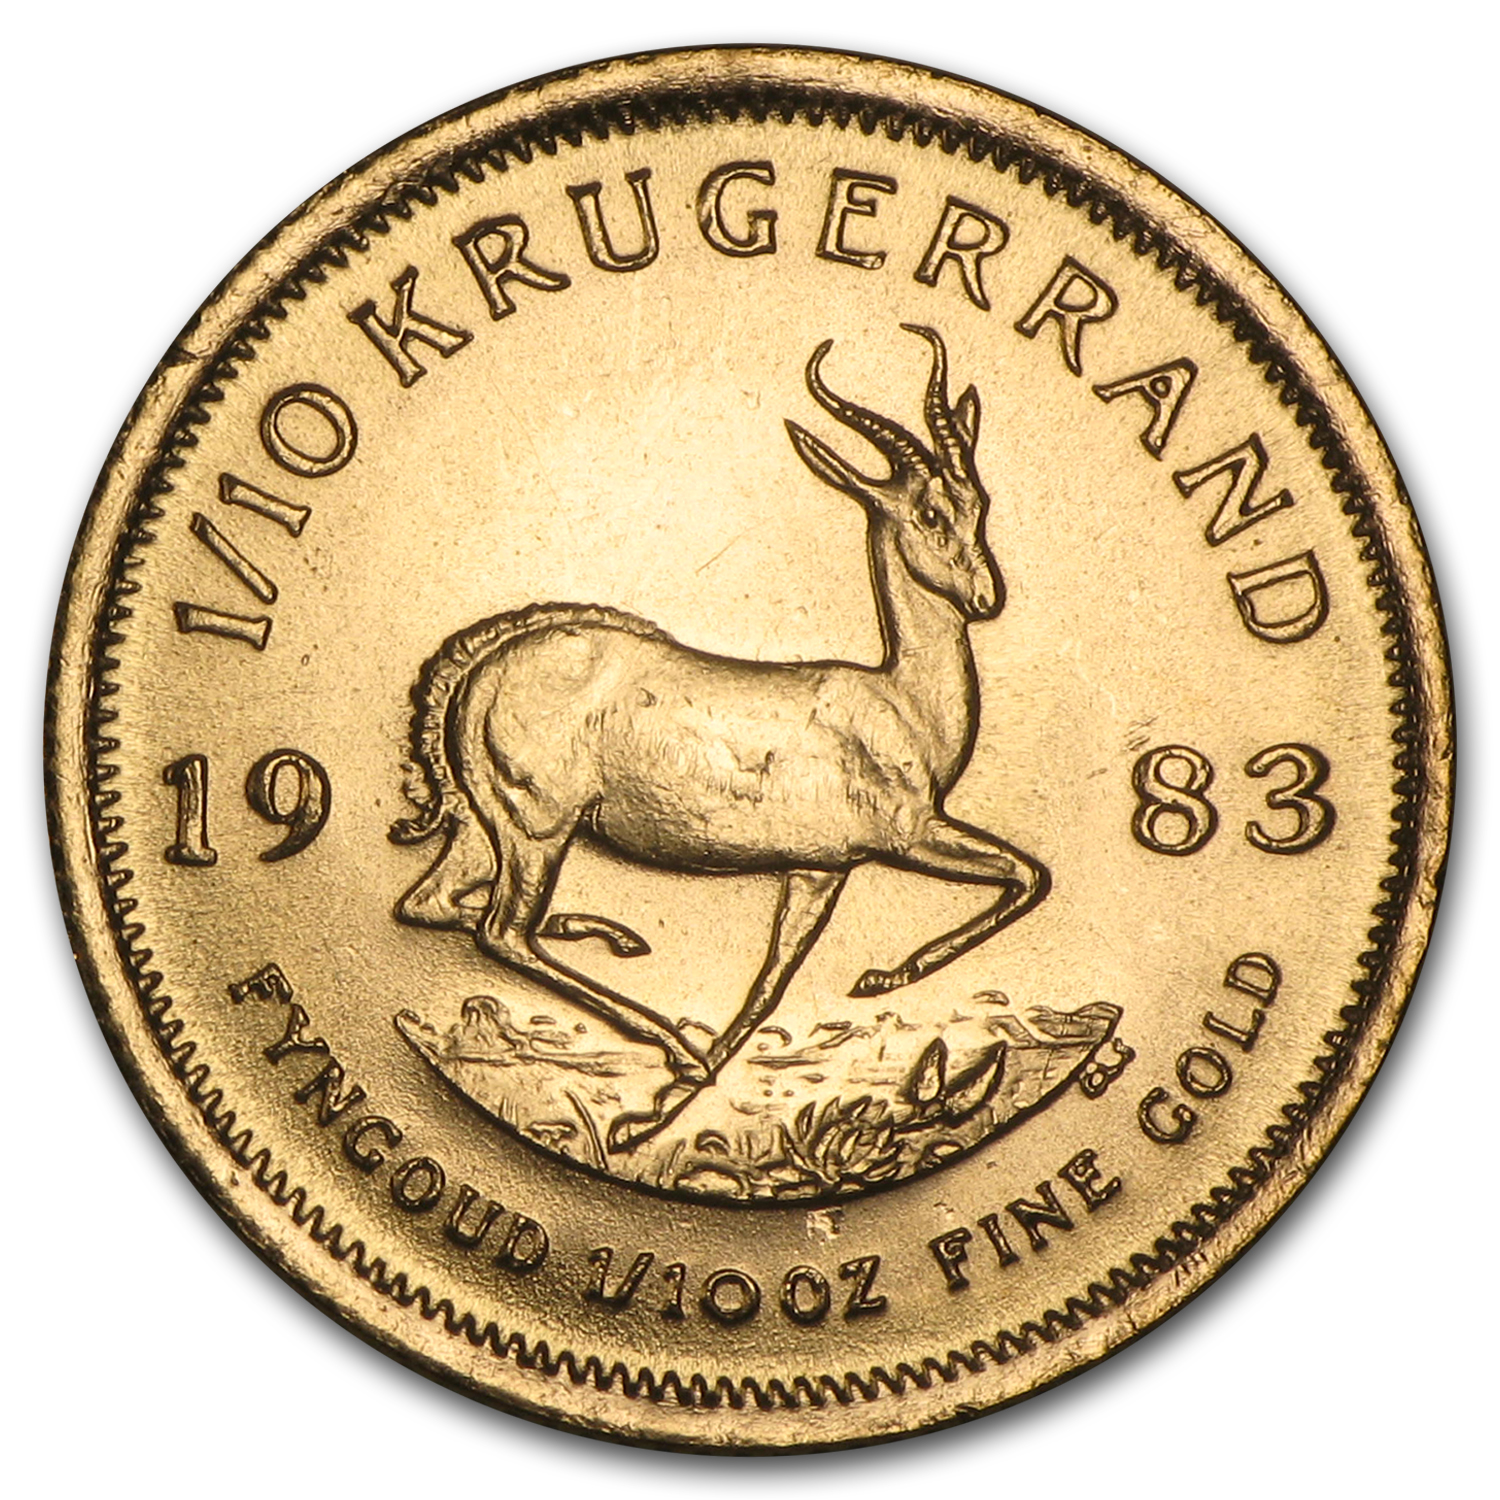 Buy 1983 South Africa 1/10 oz Gold Krugerrand